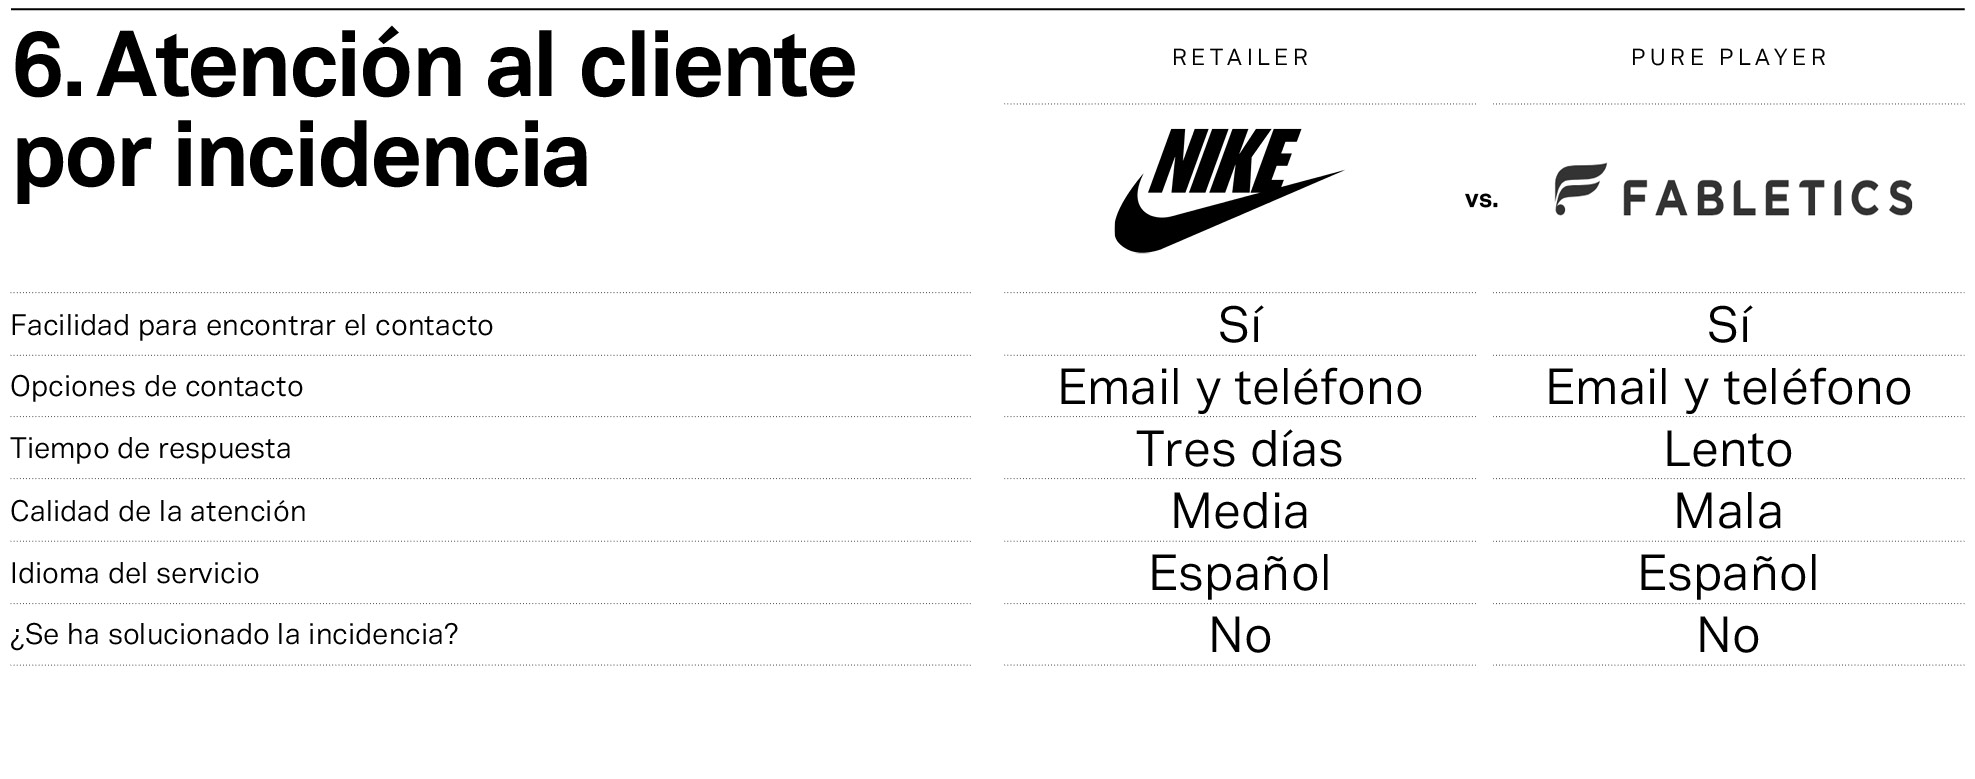 Nike y Fabletics, frente a frente en la atención al cliente por incidencia